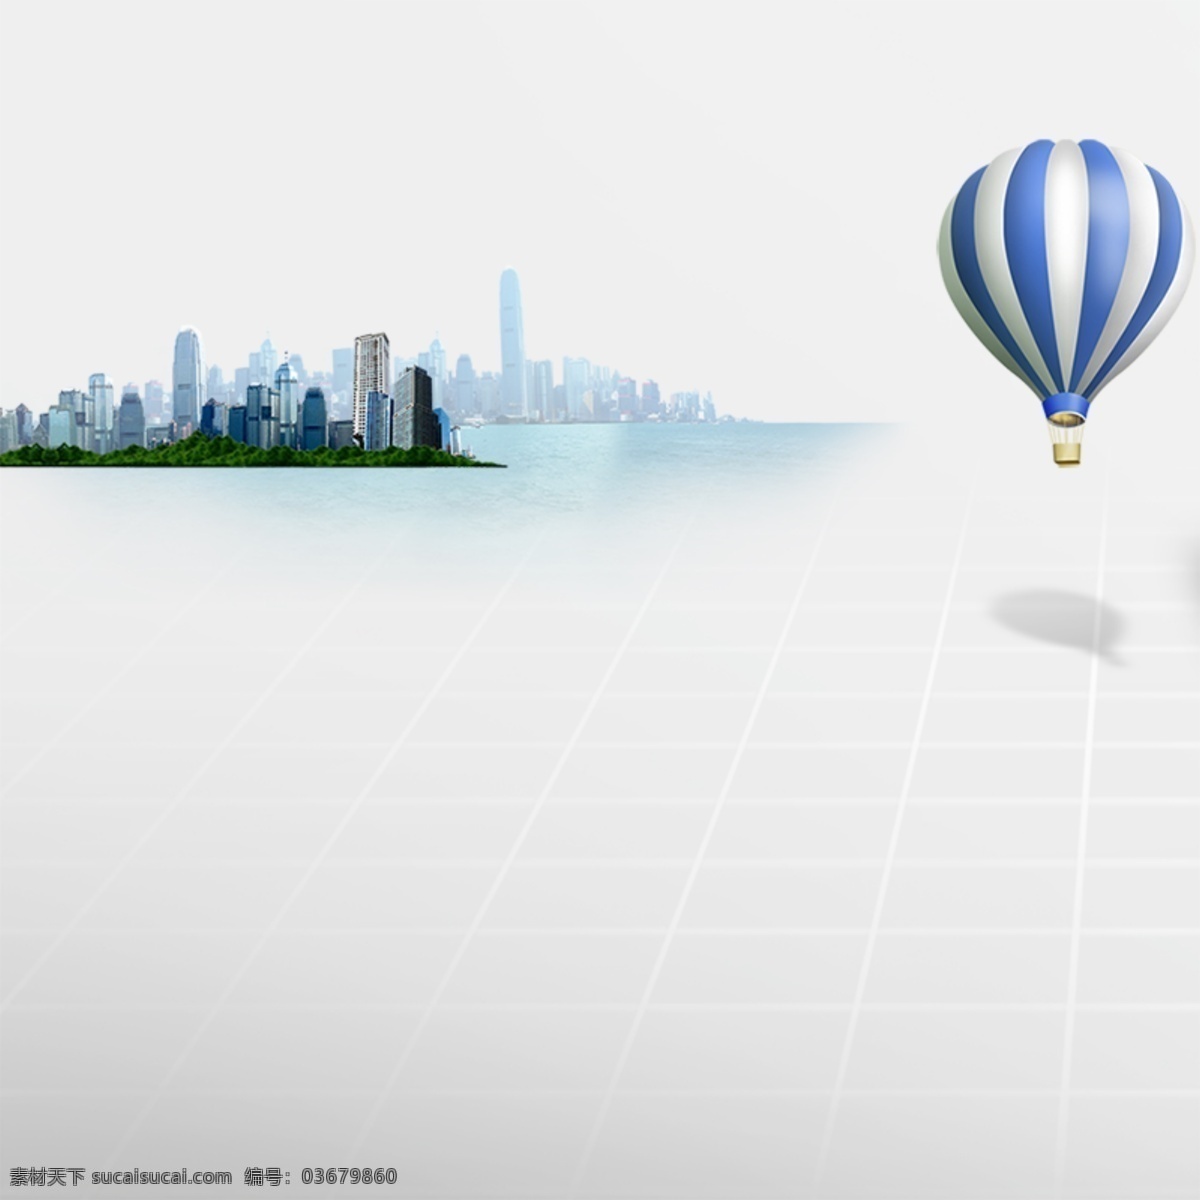 简约创意背景 热气球 简约背景 创意背景 建筑 白色